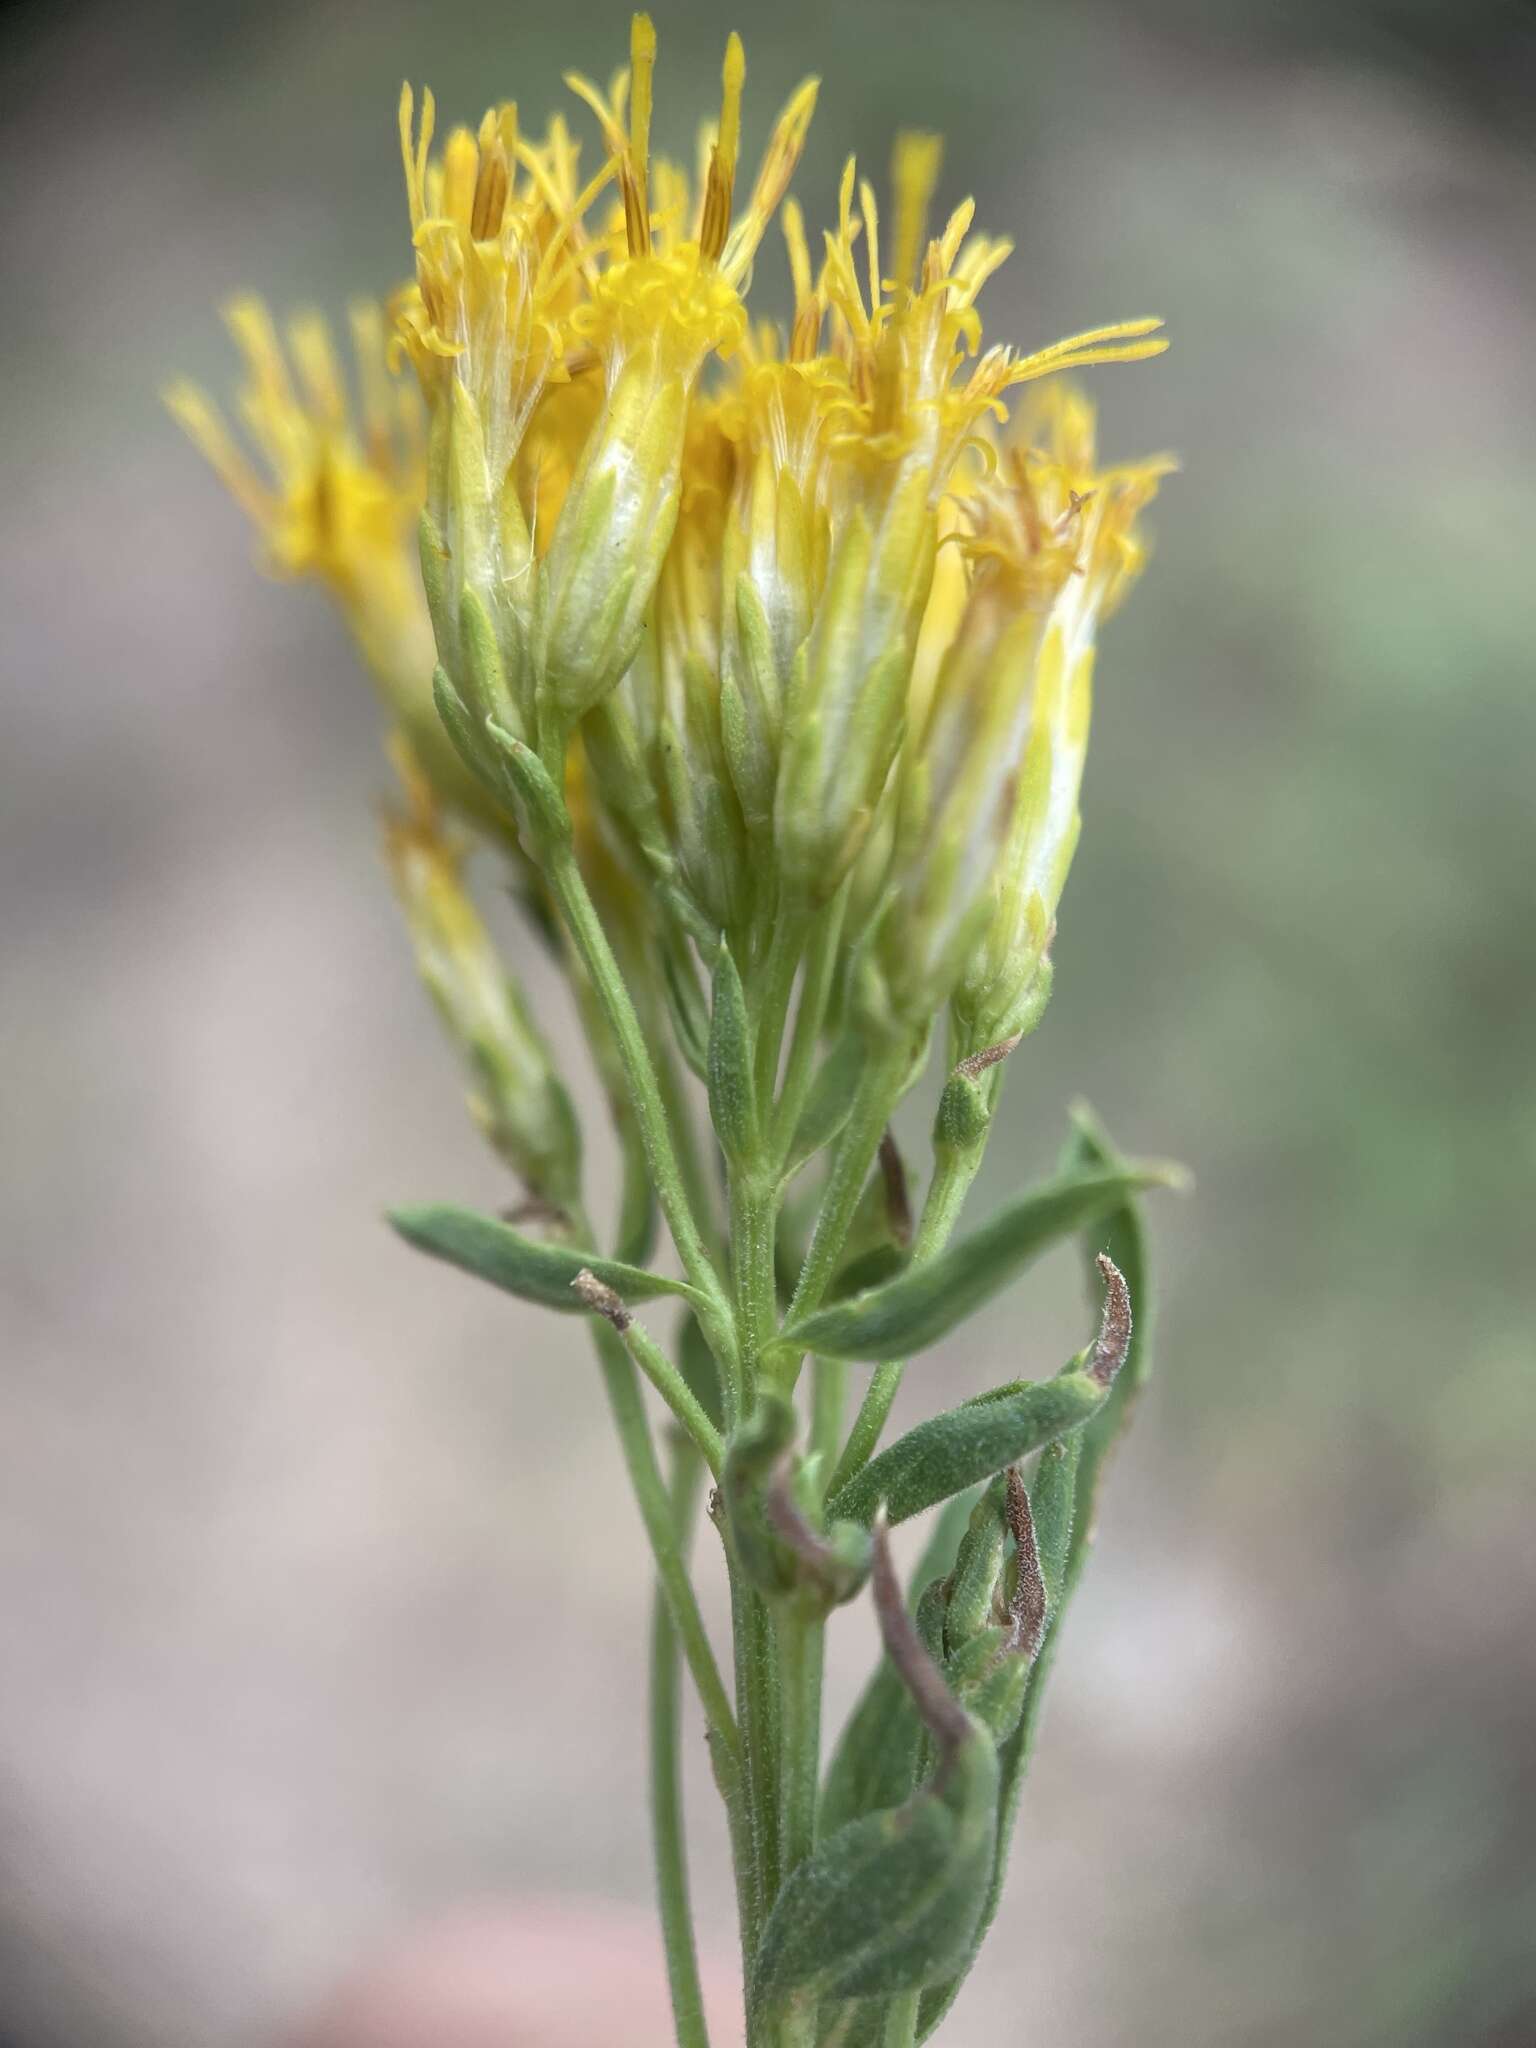 Image of yellow rabbitbrush